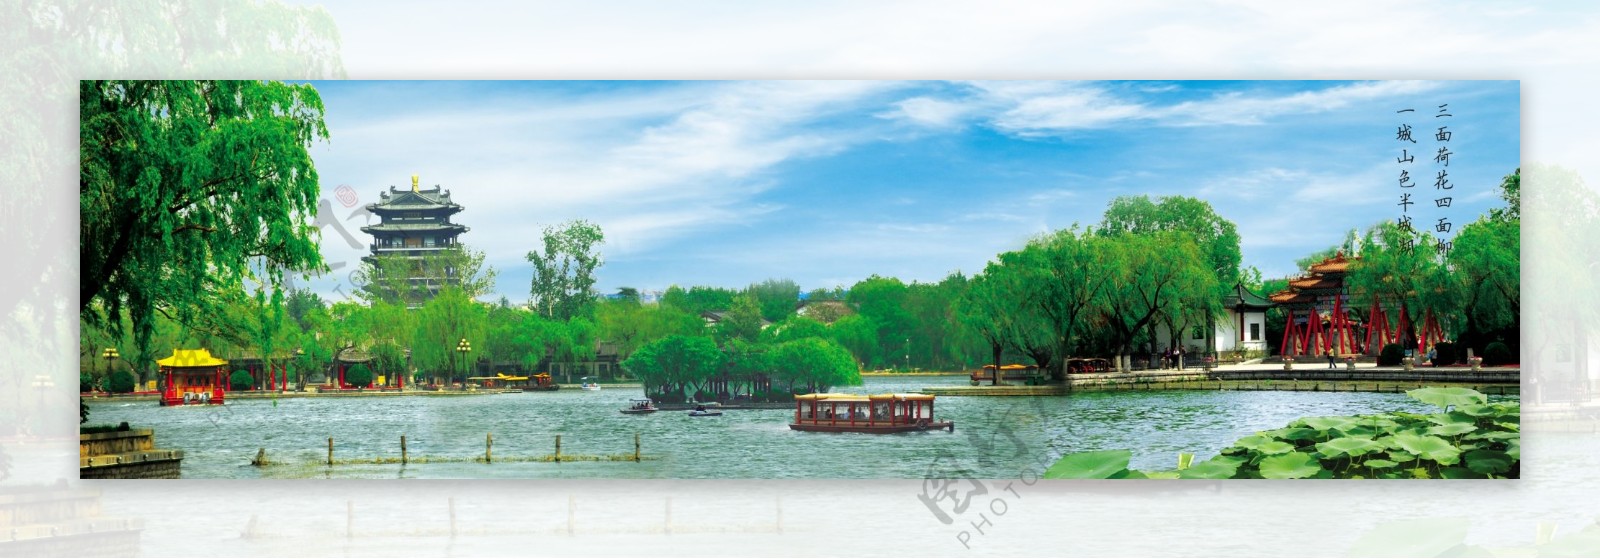 大明湖景象图